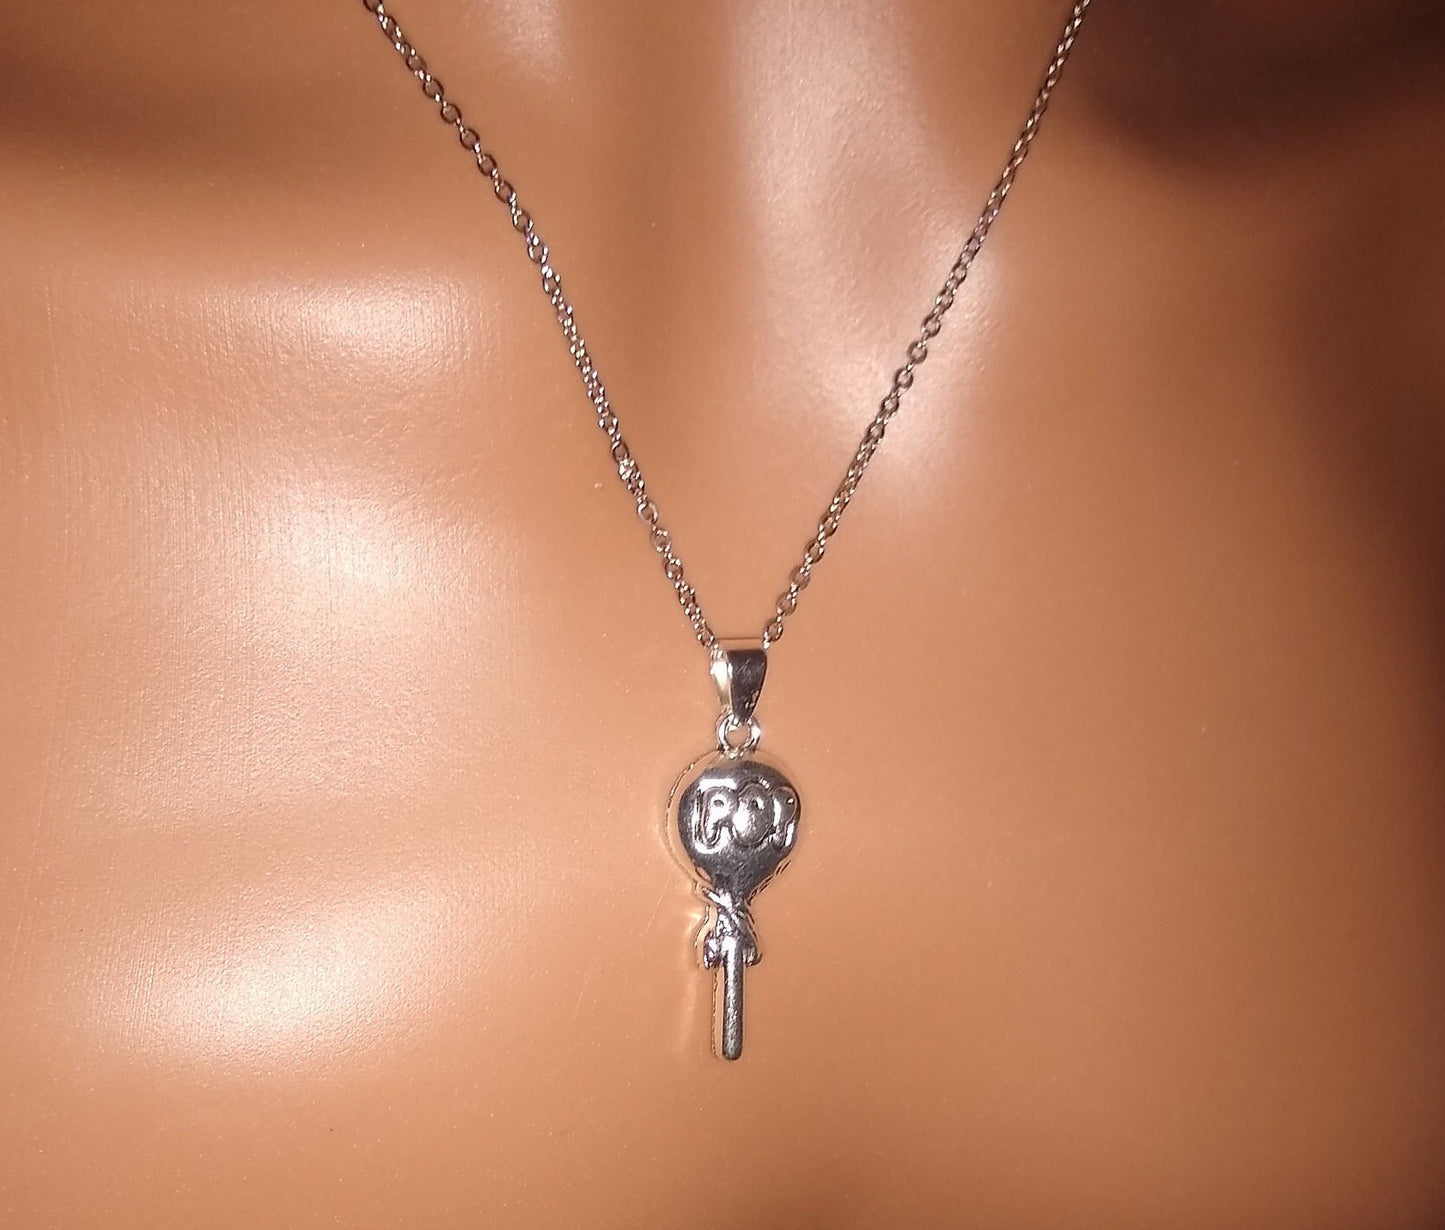 Sucker necklace / Tootsie Pop necklace / lollipop necklace / Candy charm / Silver necklace / Tootsie Roll Pop pendant / lollipop jewelry